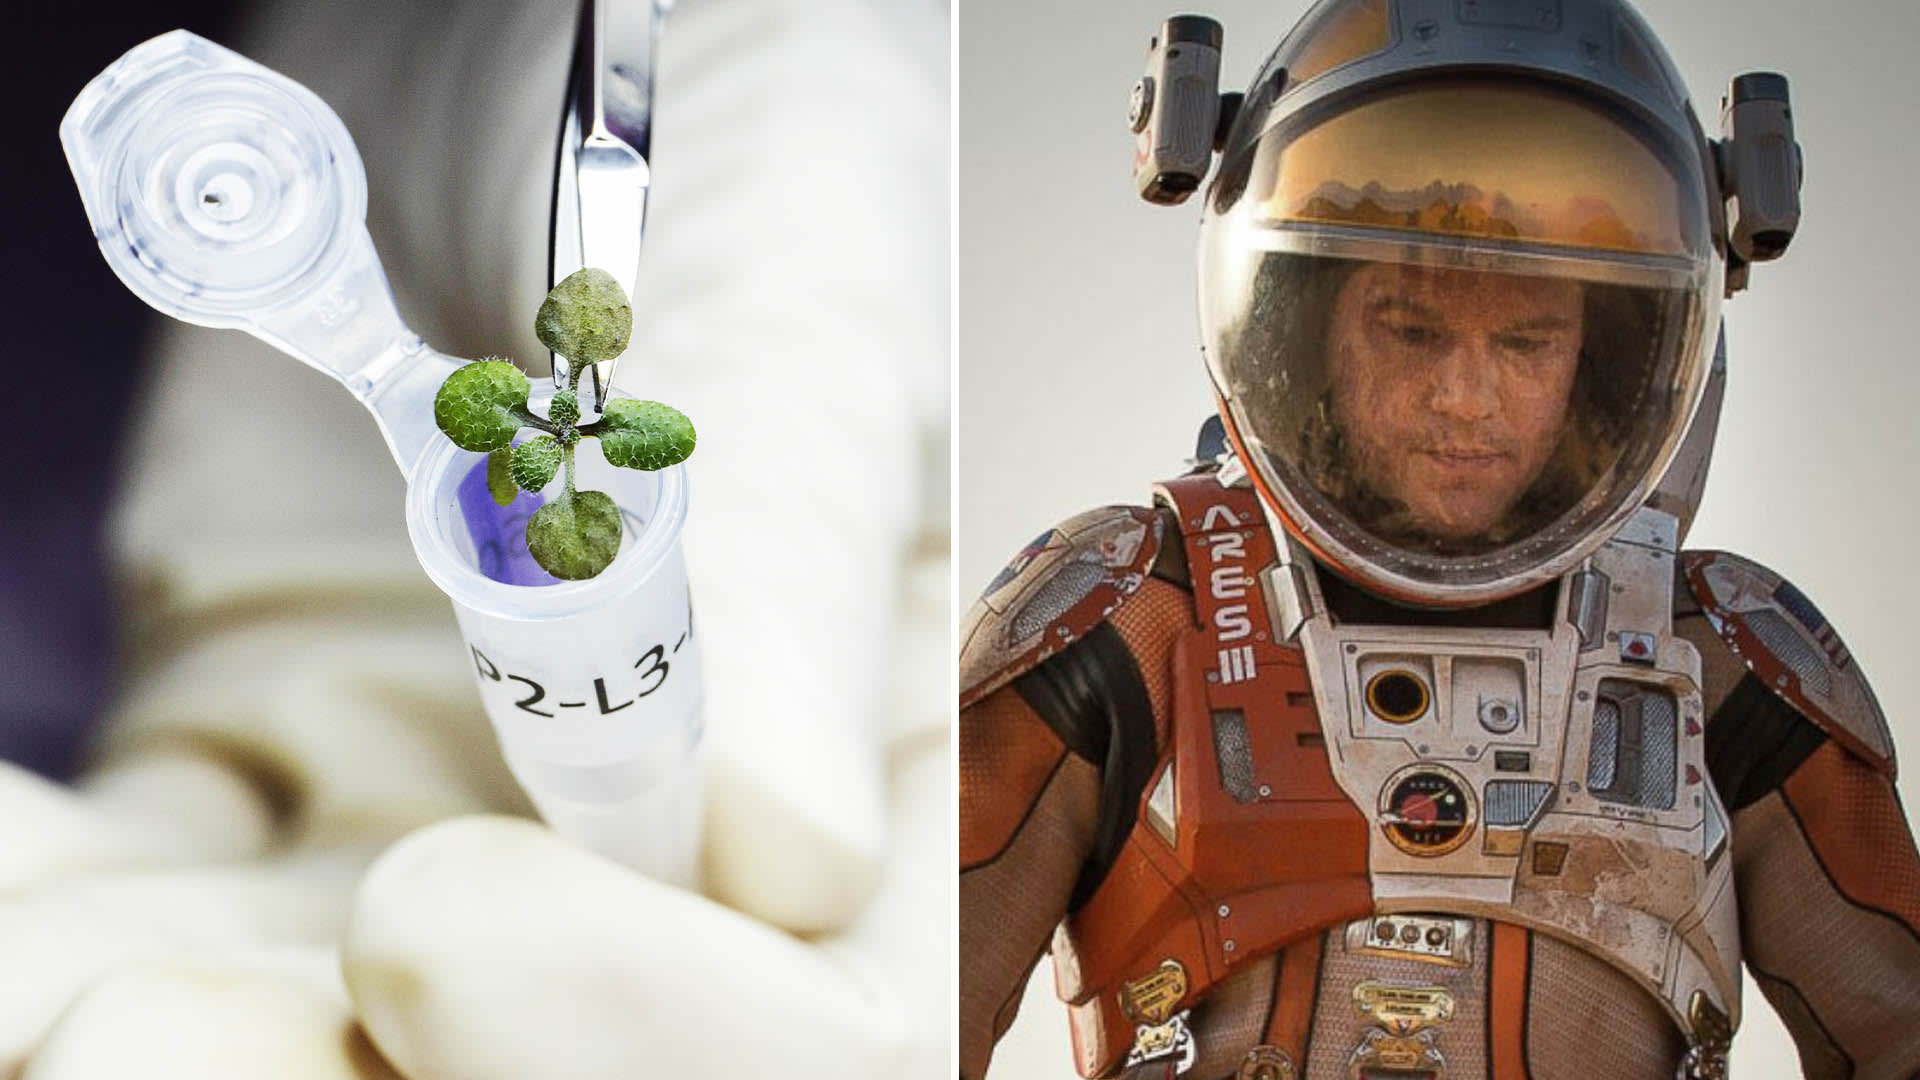 Budeme jednou pěstovat brambory na Marsu jako ve filmu Marťan?